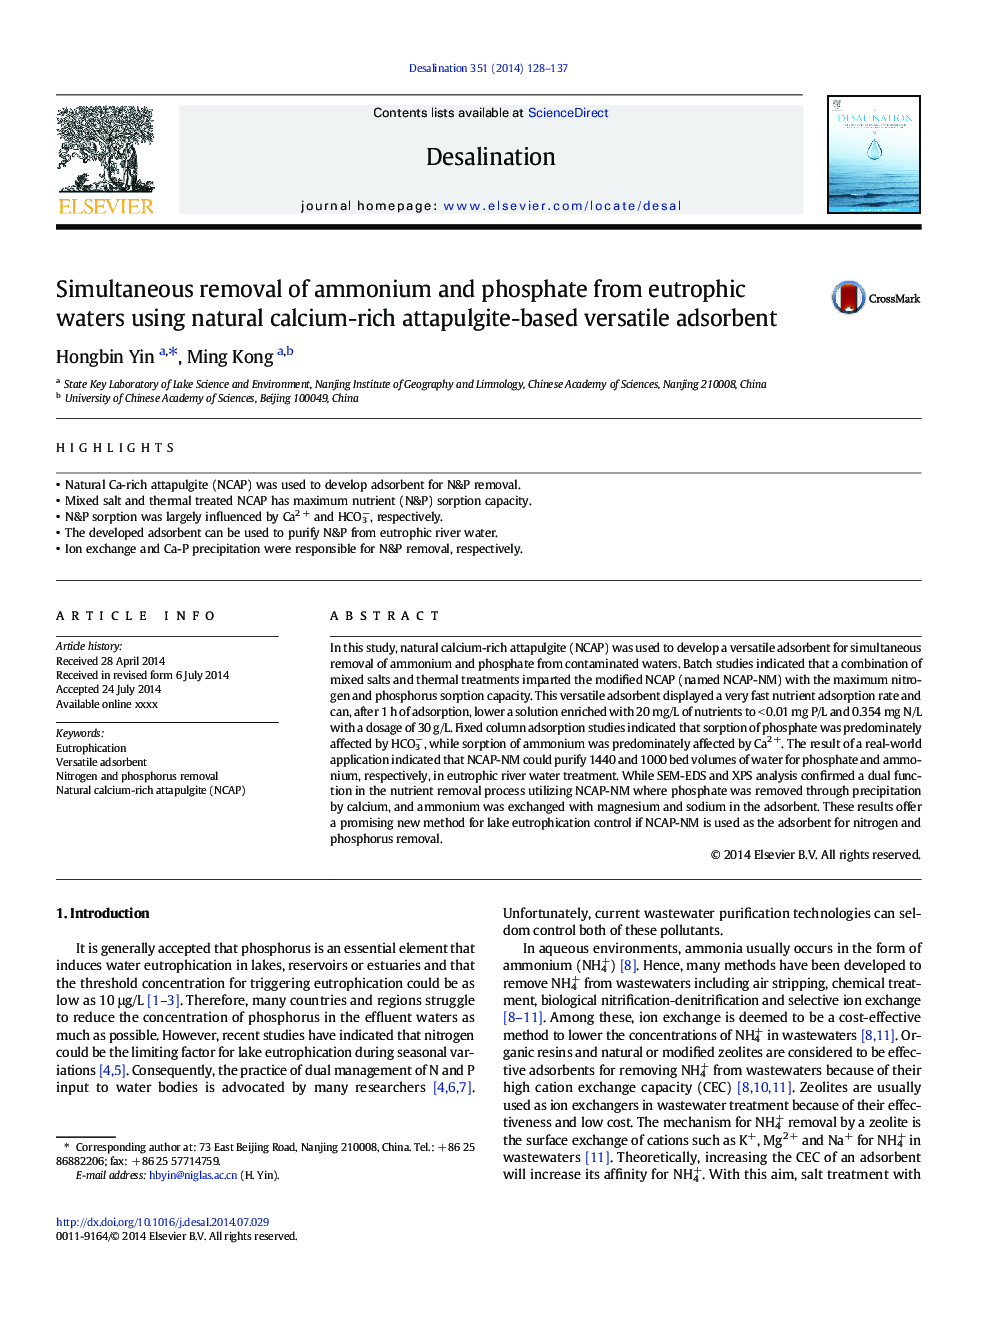 حذف همزمان آمونیاک و فسفات از آب های یوتروفیک با استفاده از جاذب های چند منظوره مبتنی بر اتپوگلیفت طبیعی با کلسیم طبیعی 